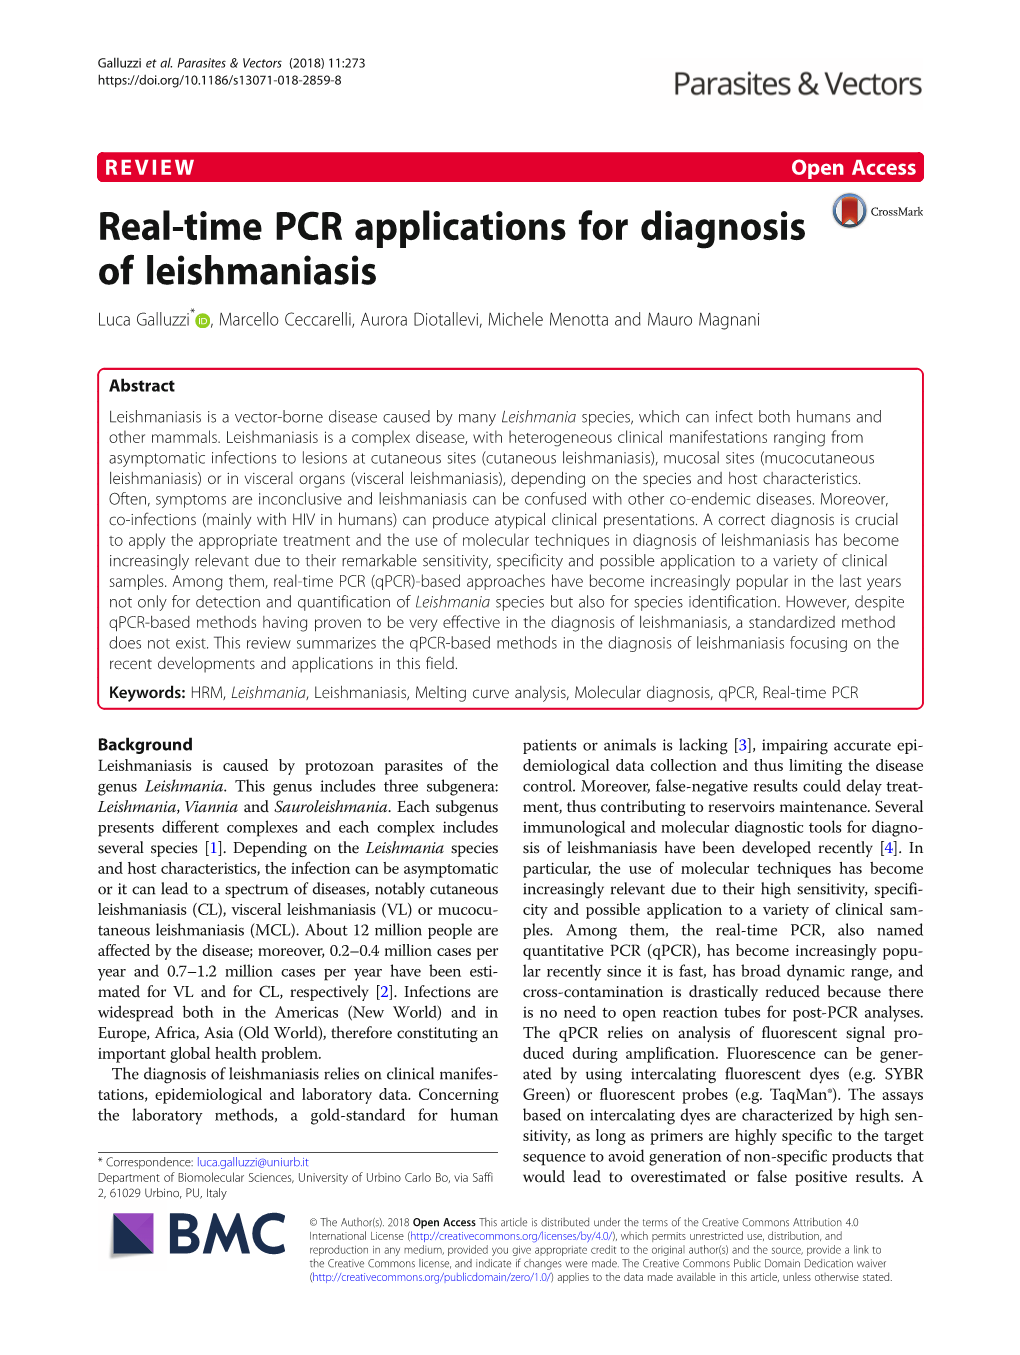 Real-Time PCR Applications for Diagnosis of Leishmaniasis Luca Galluzzi* , Marcello Ceccarelli, Aurora Diotallevi, Michele Menotta and Mauro Magnani